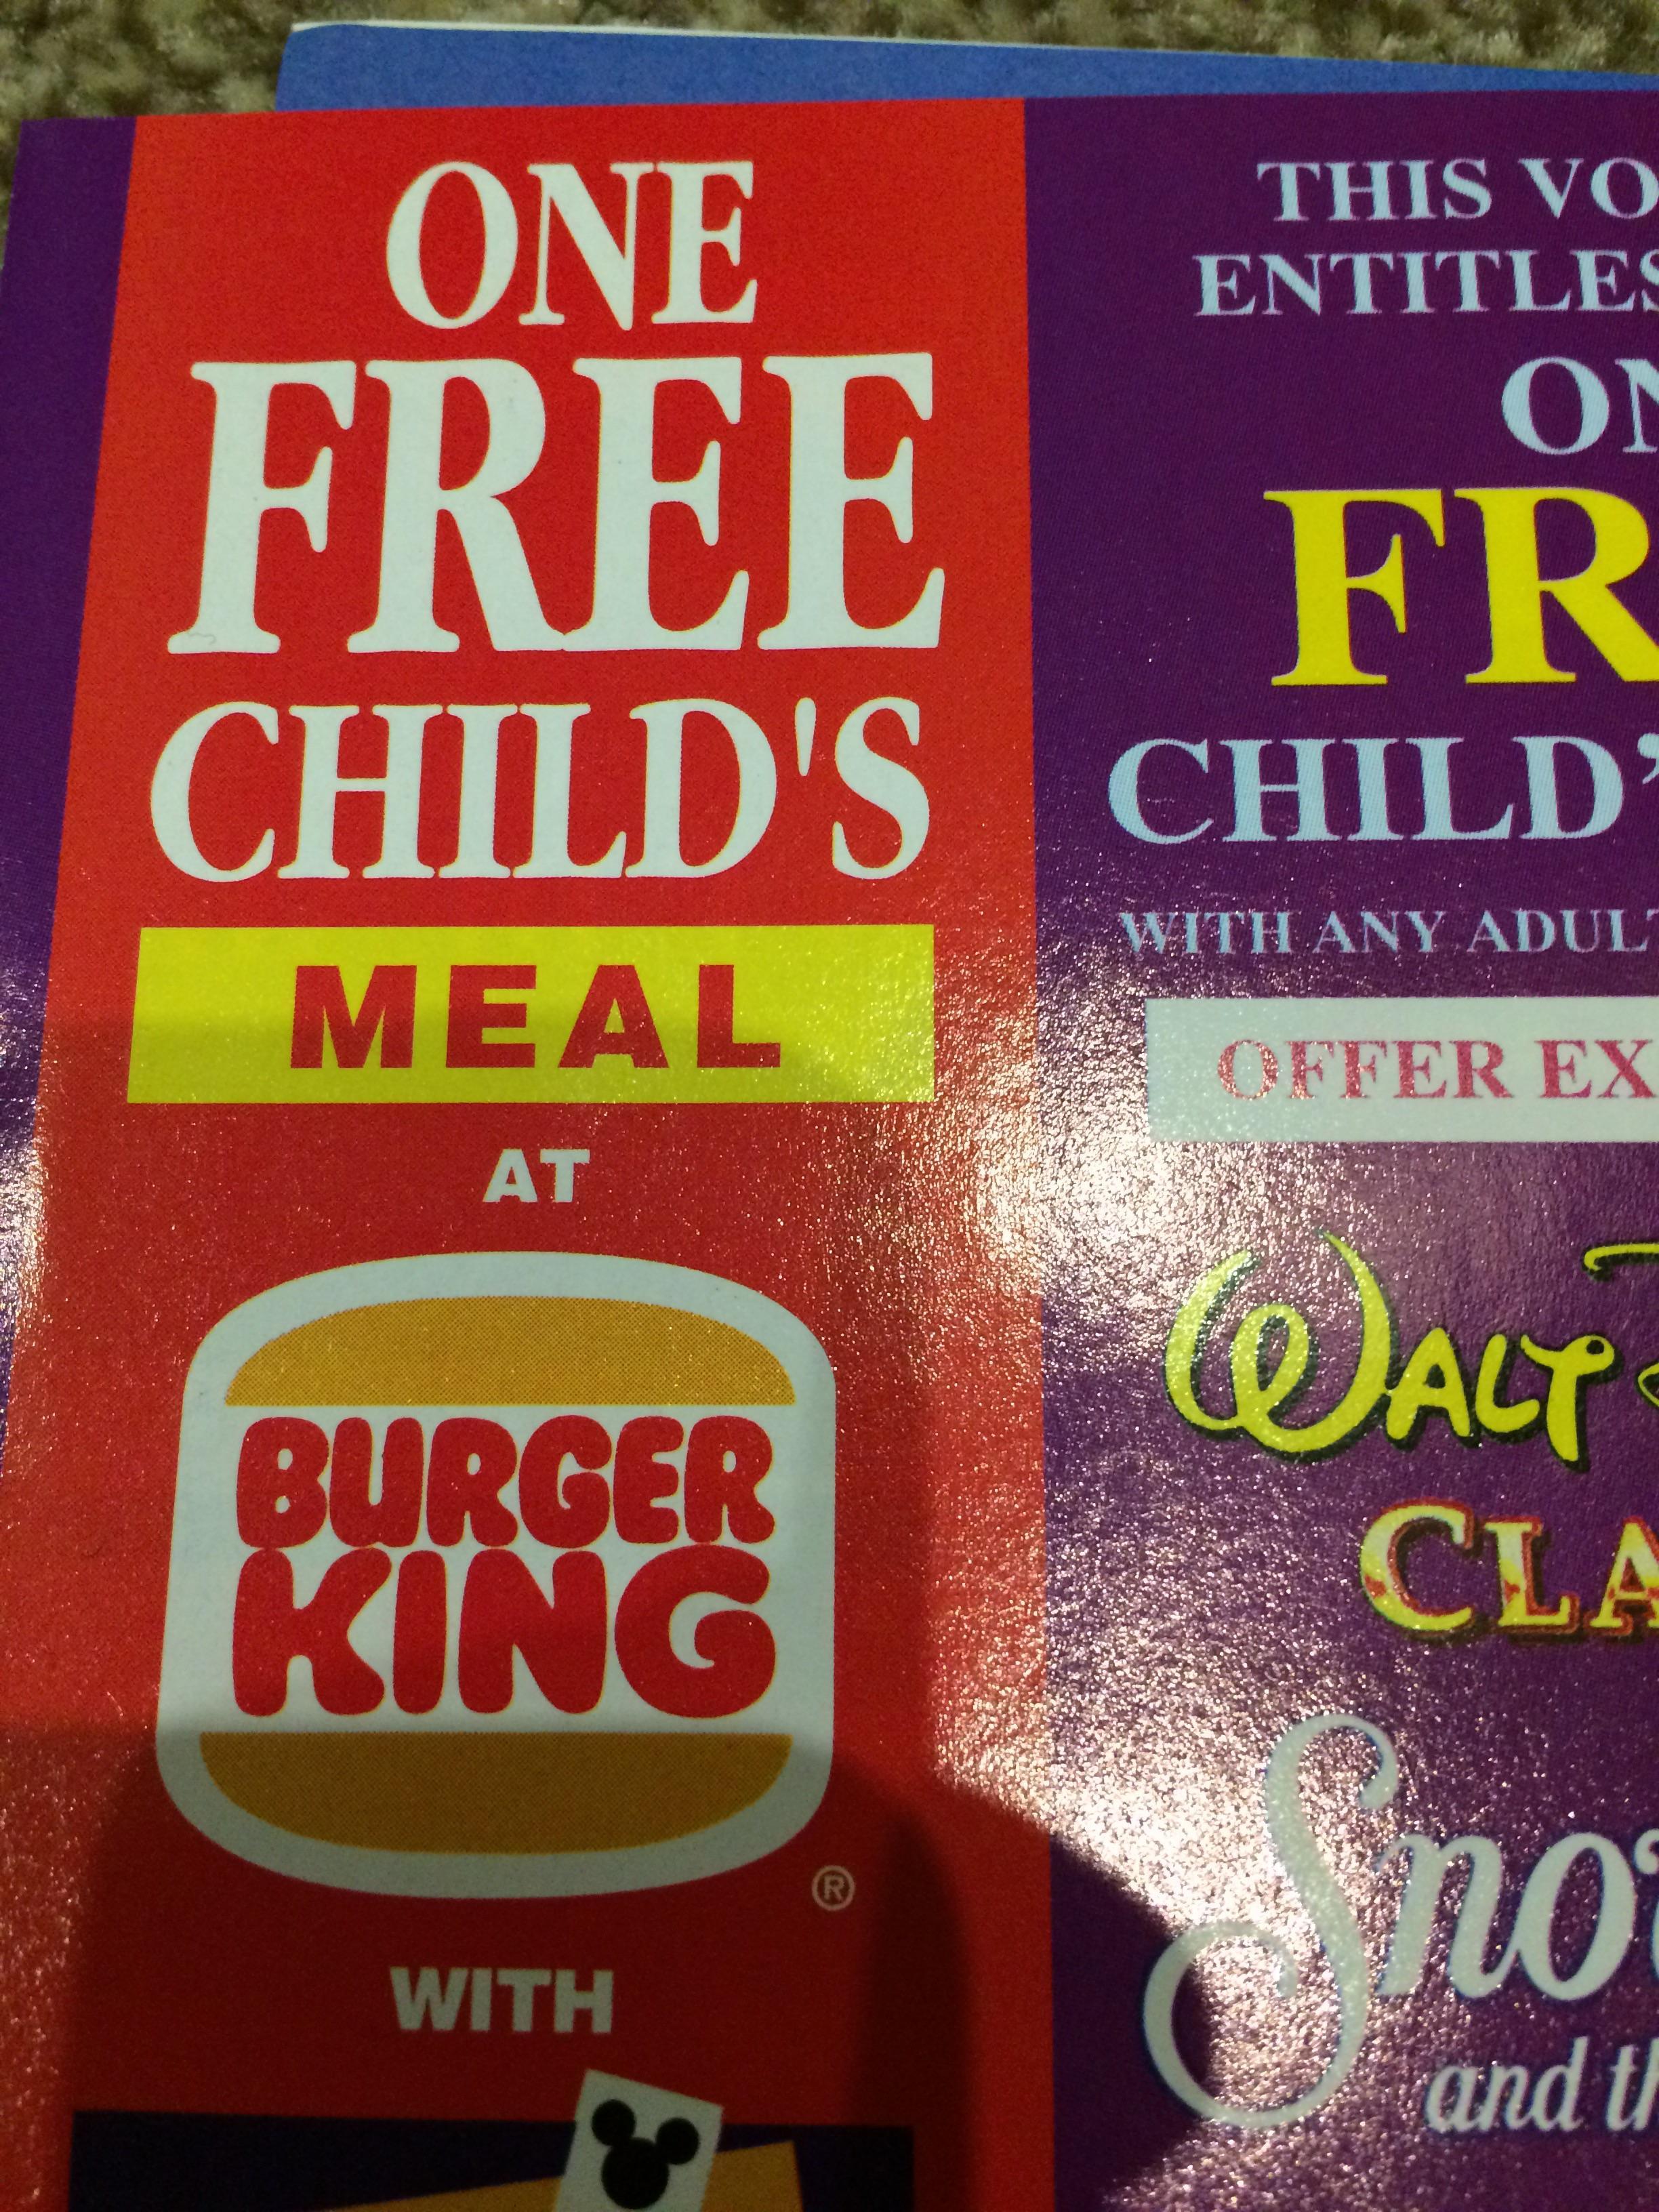 Old Burger King Logo - The old Burger King logo : nostalgia